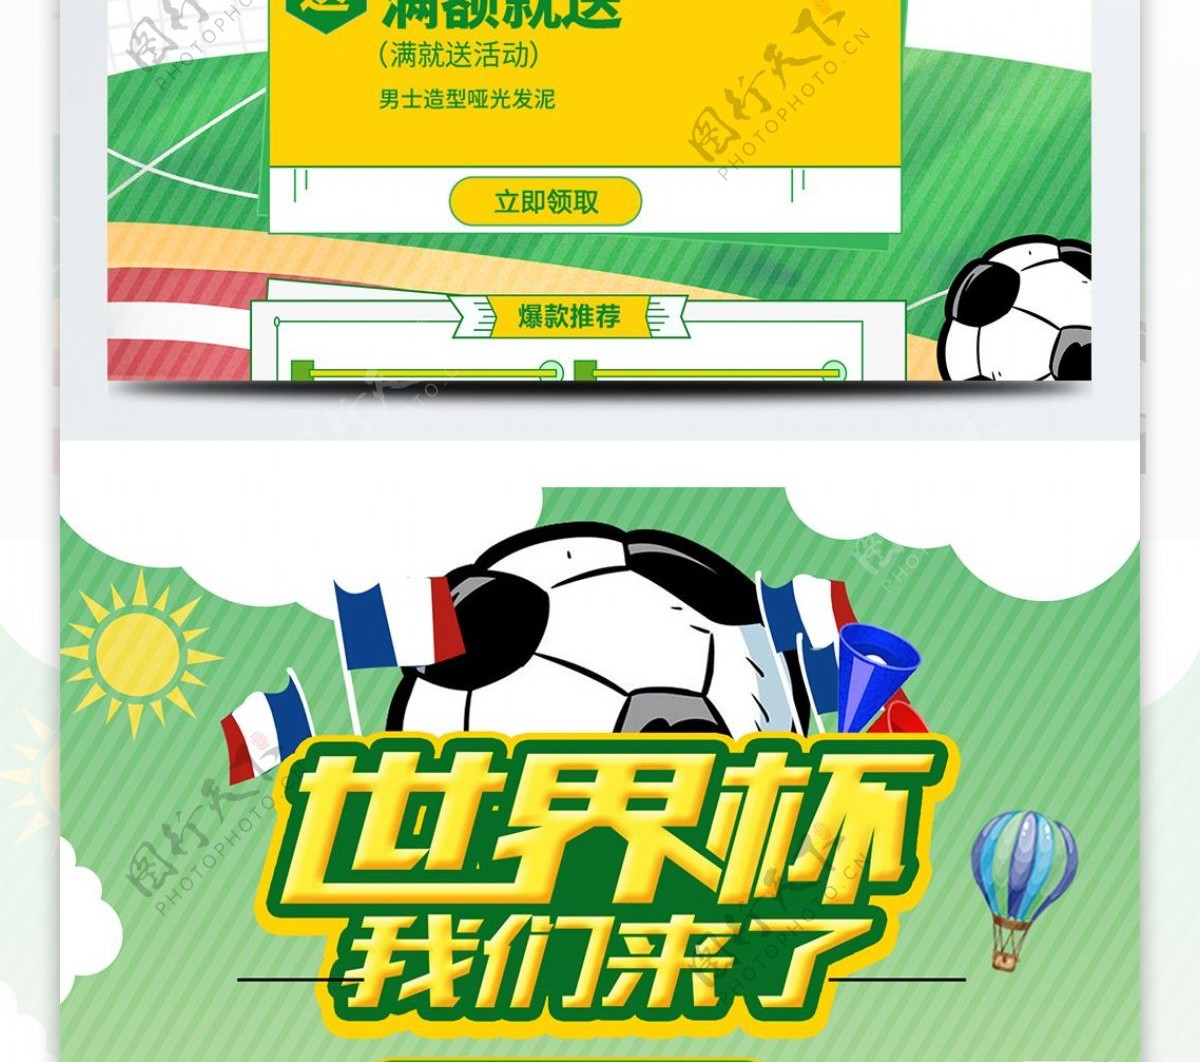 绿色清新2018世界杯足球运动淘宝首页